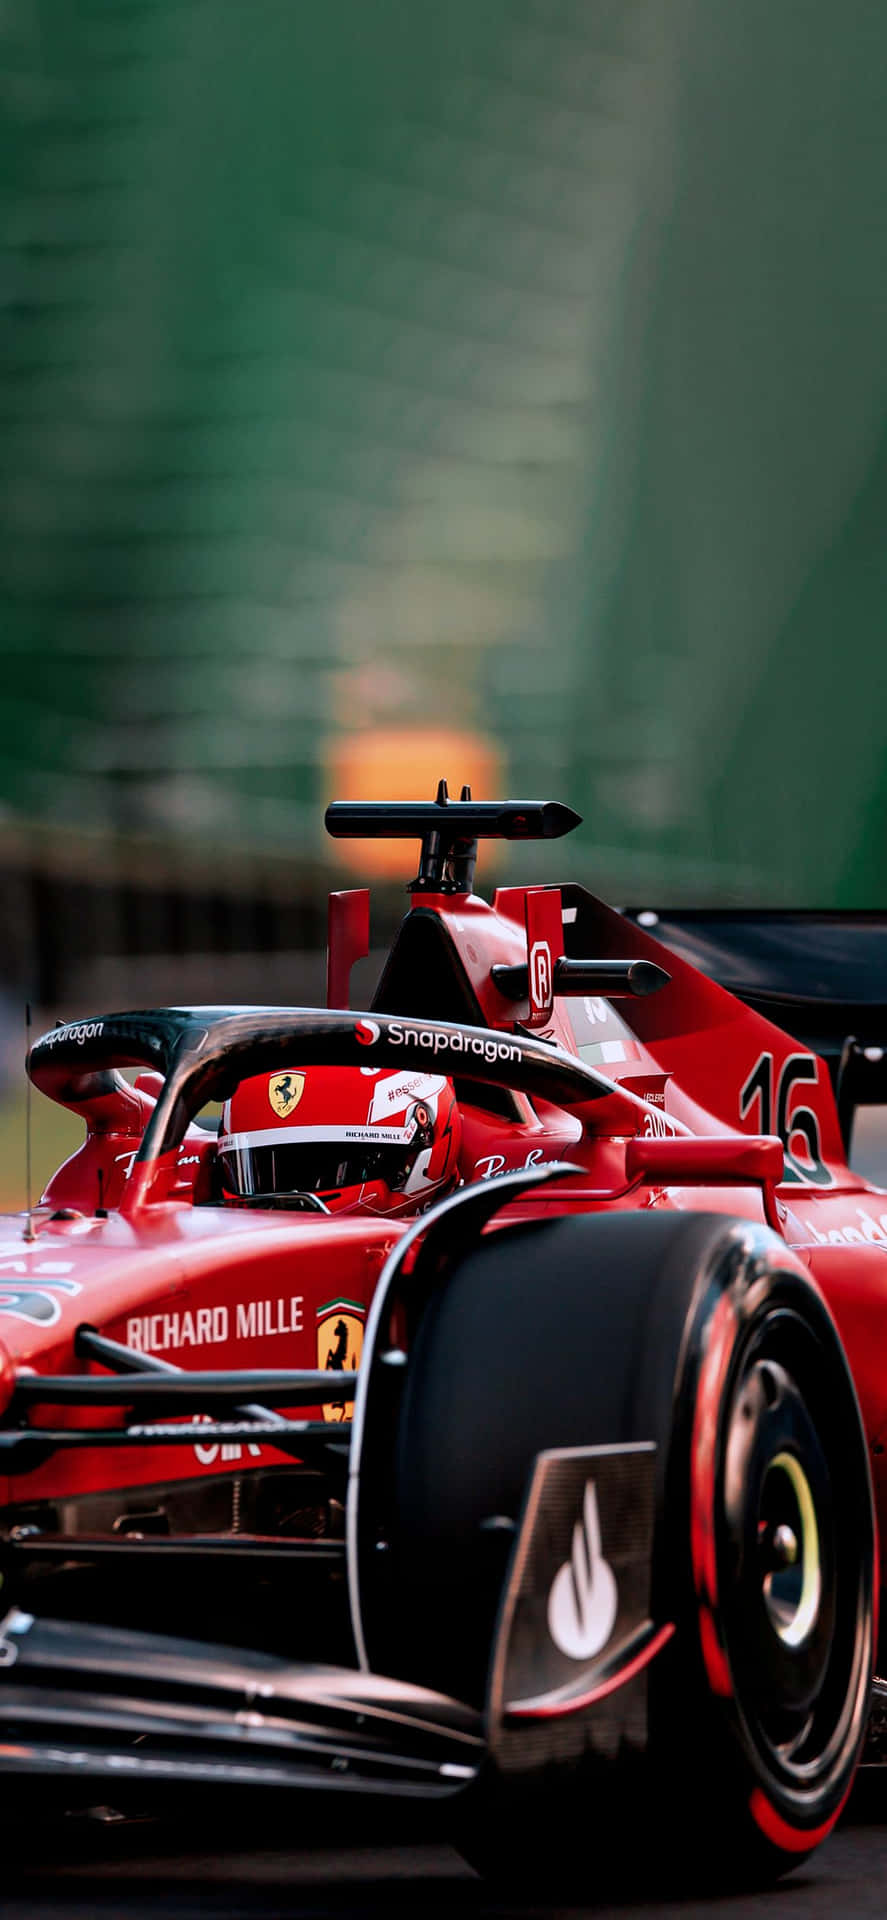 Ferrari F1 Racing Car Track Action Wallpaper